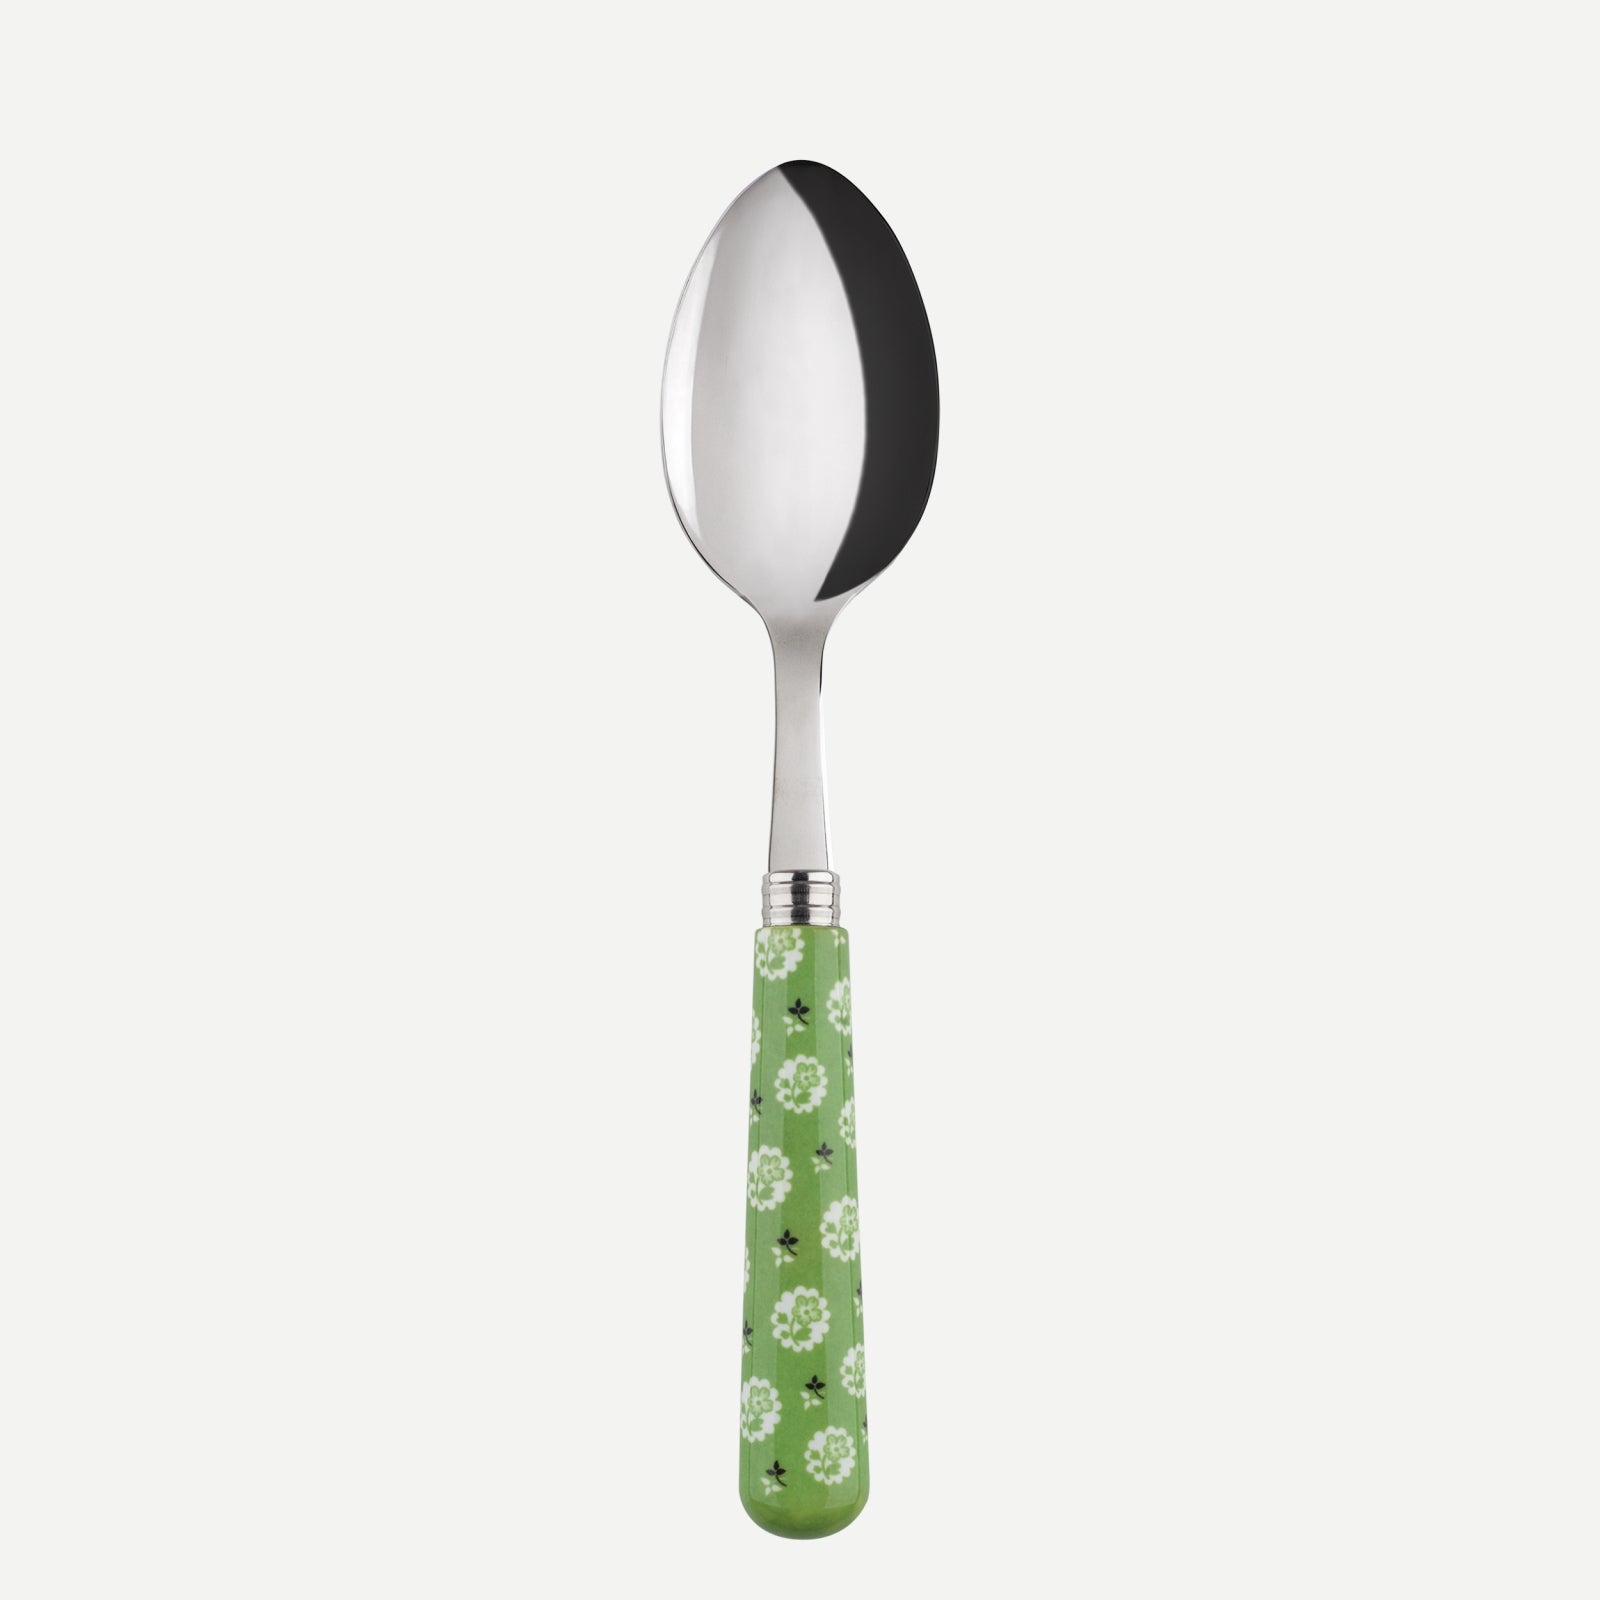 Soup spoon - Provencal - Garden green